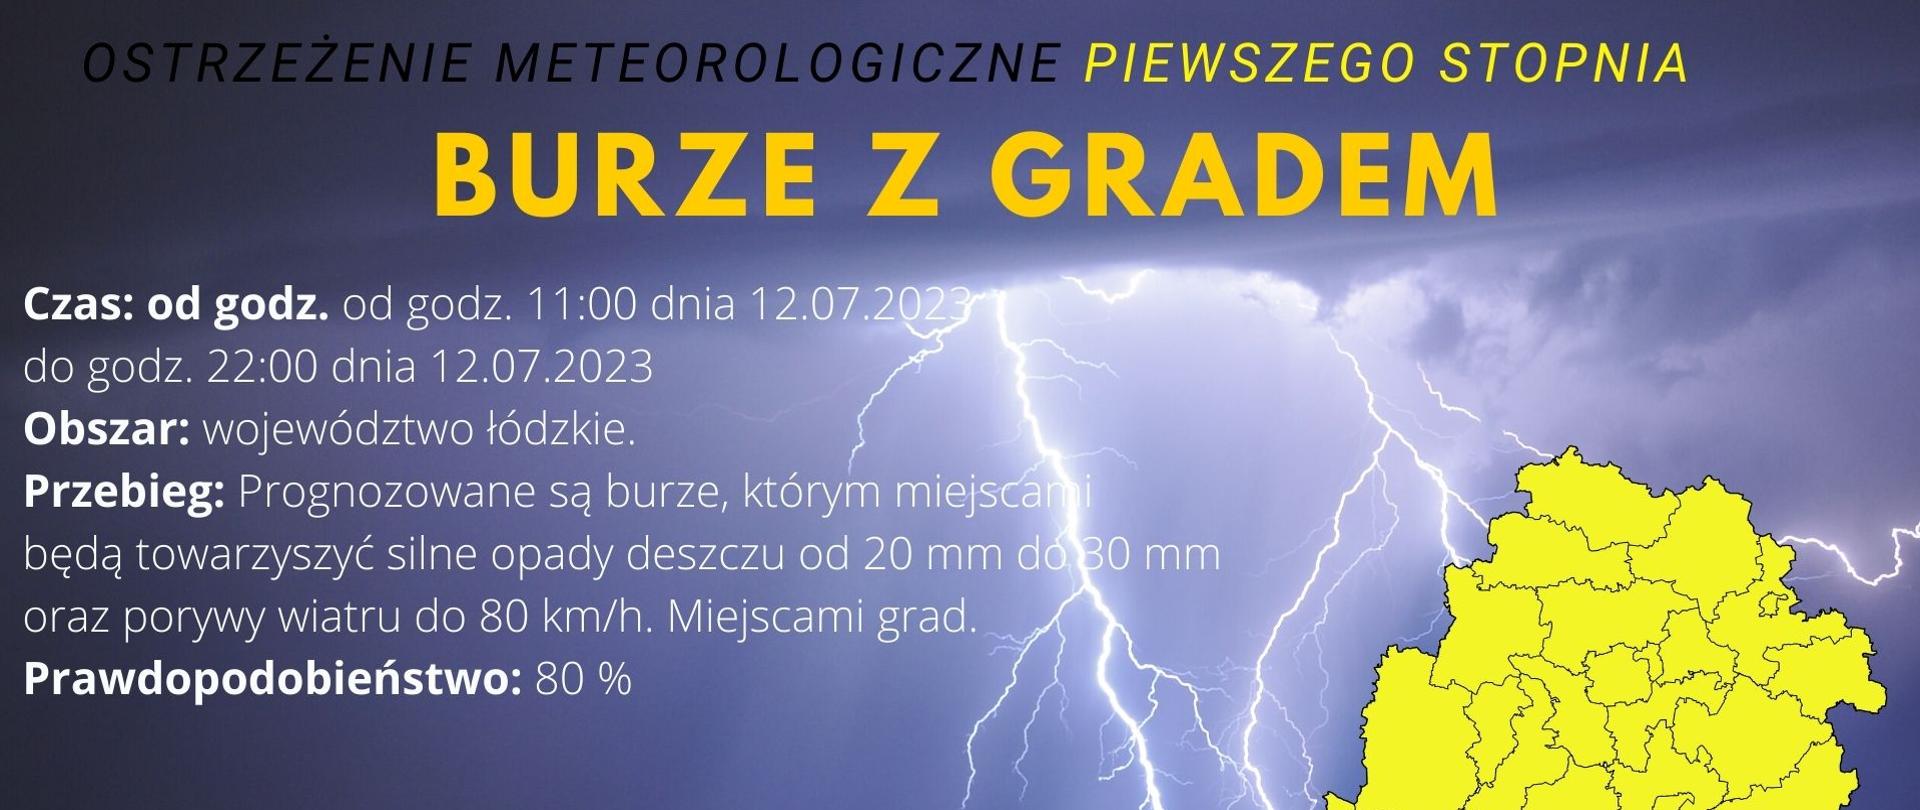 Ostrzeżenie o burzach z gradem, w tle błyskawice i mapa województwa łódzkiego